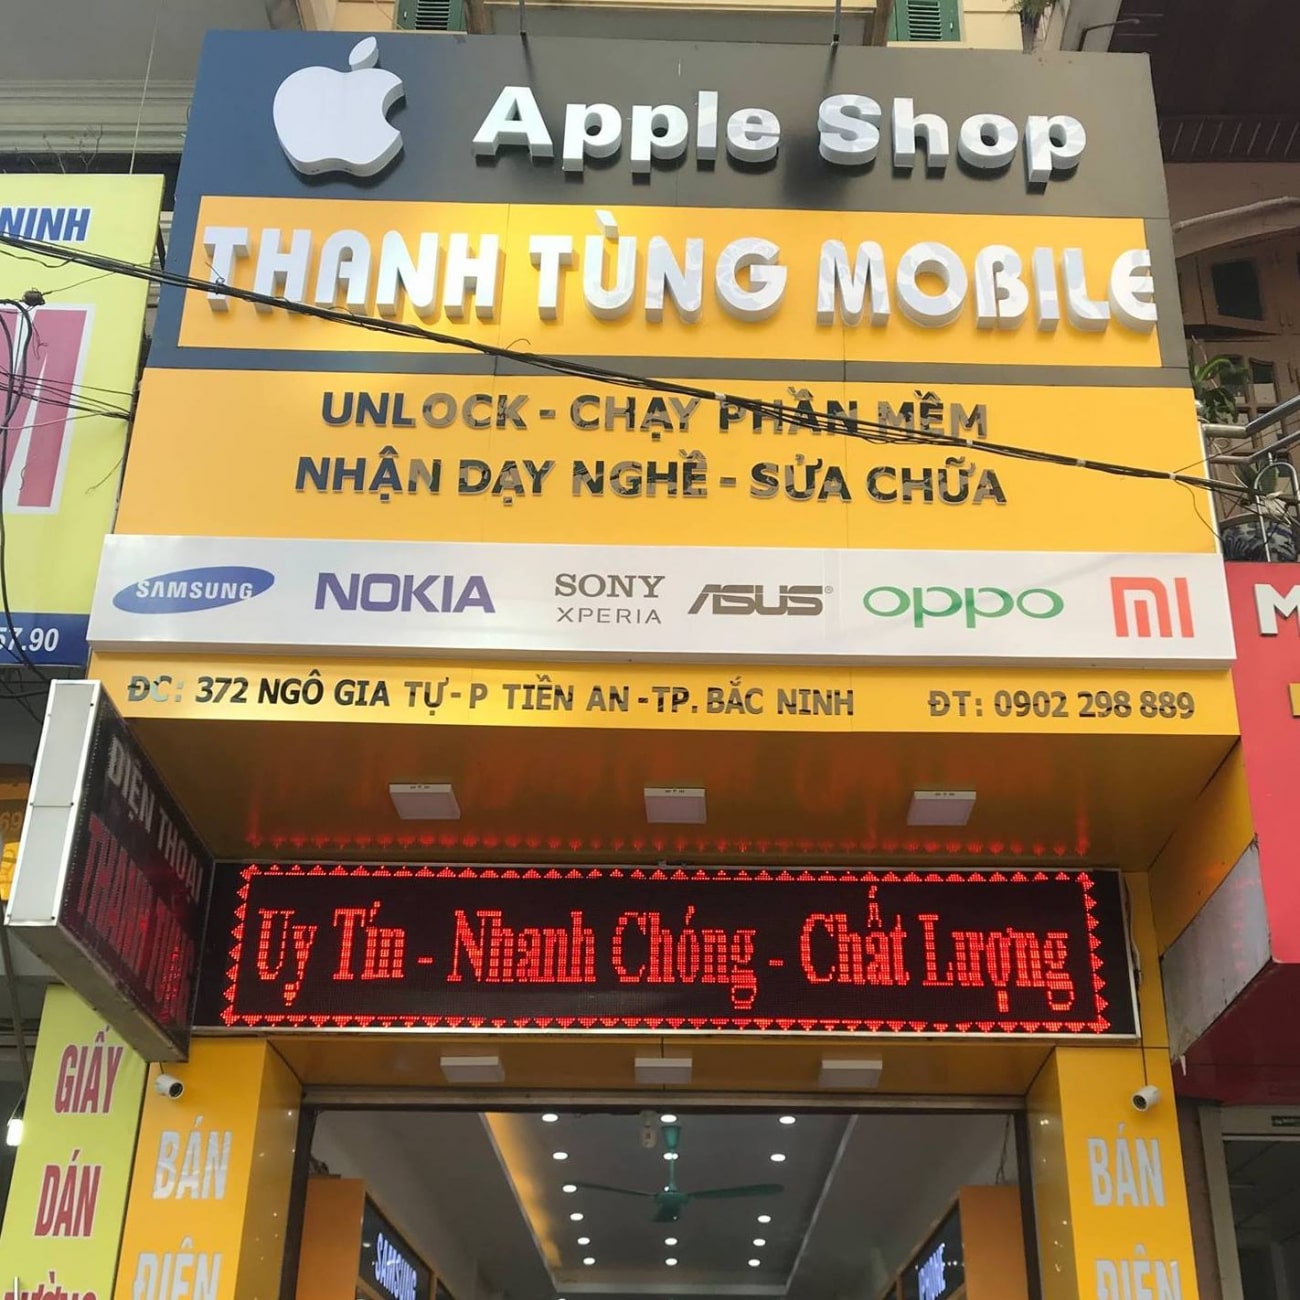 đơn vị sửa chữa iphone Bắc Ninh